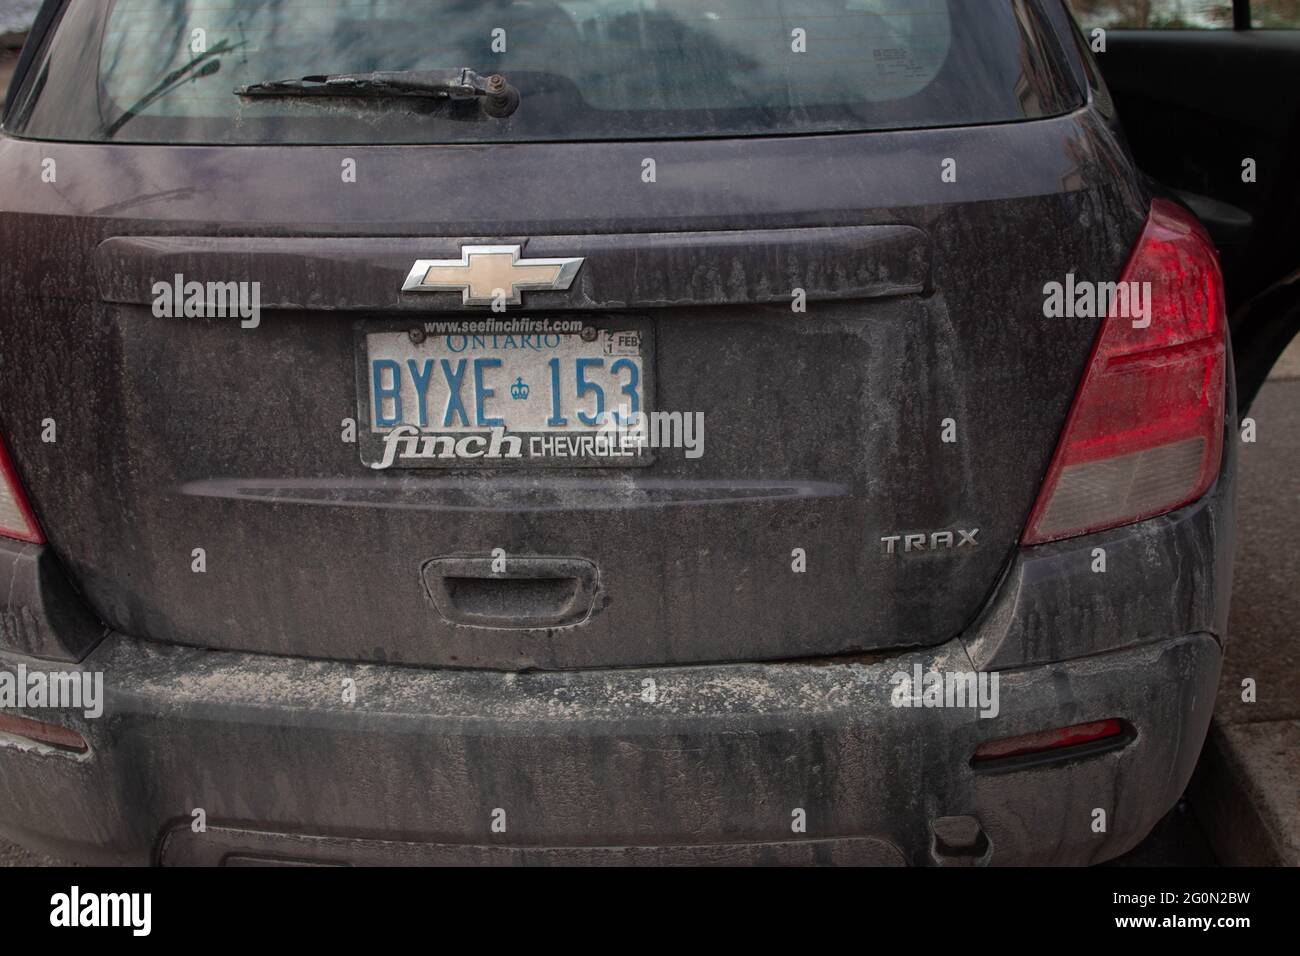 Hamilton Canada, Januar 19 2021: Redaktionelles Foto eines schmutzigen, purpurnen chevrolet-Trax aus dem Jahr 2014. Der Trax ist ein mittelgroßer SUV. Stockfoto